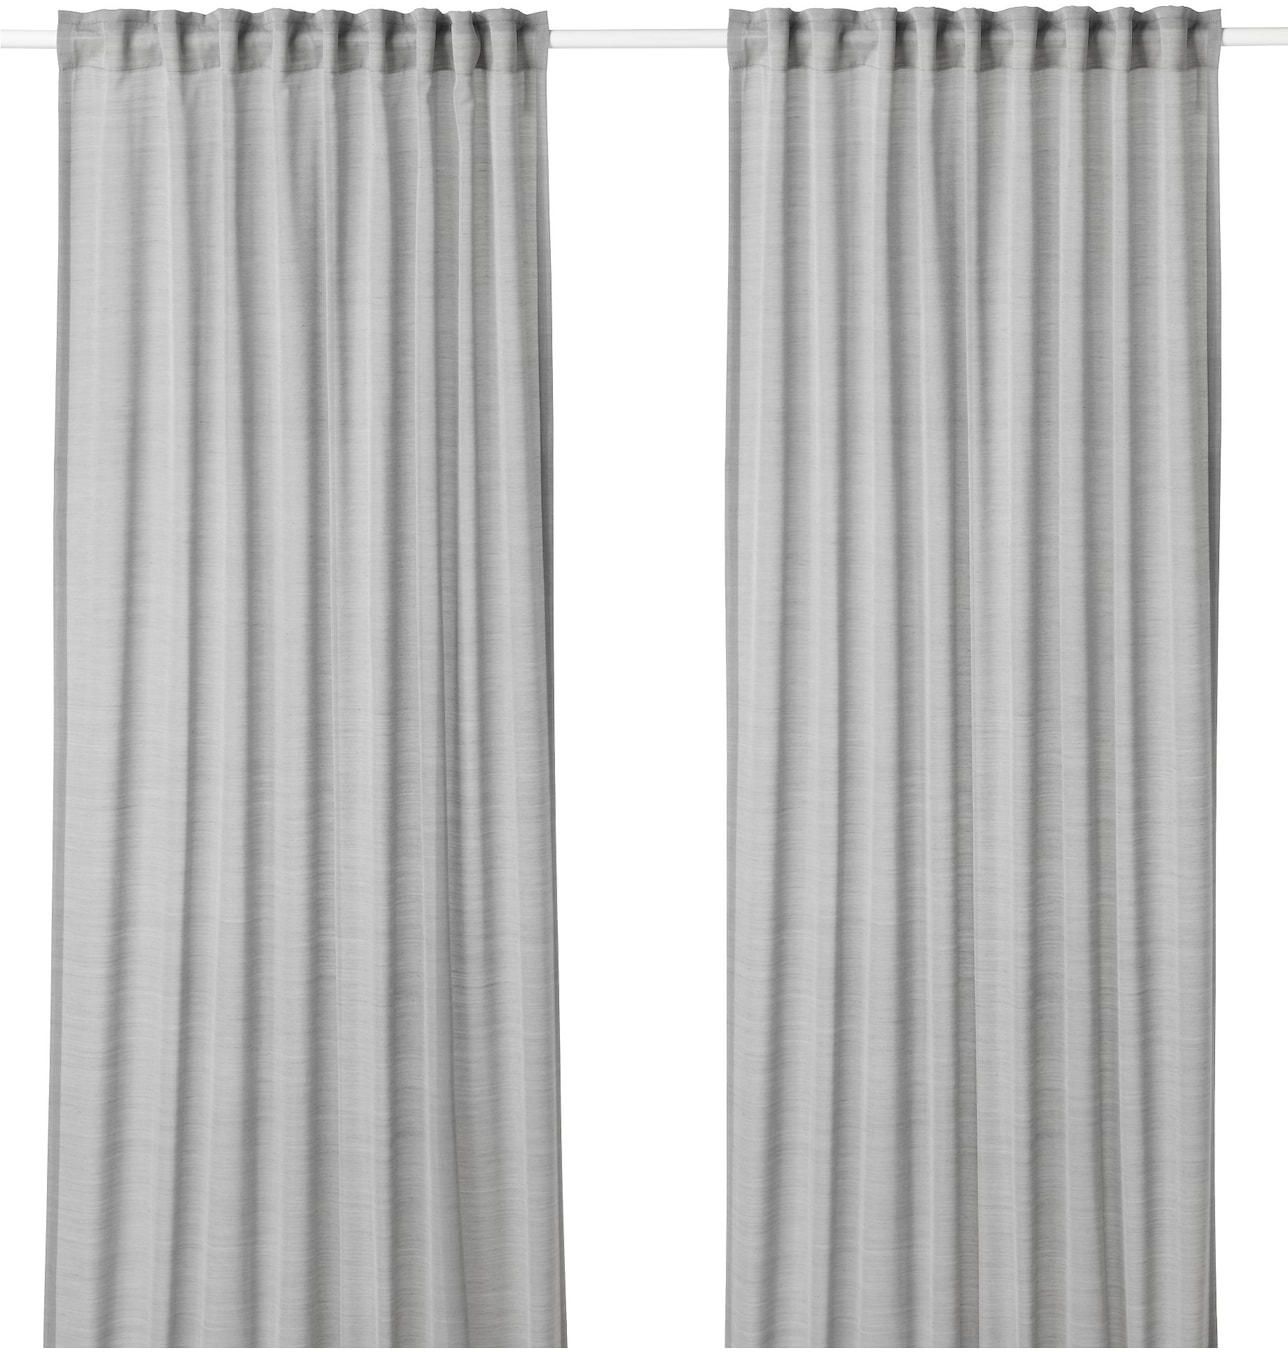 HILJA Curtains, 1 pair - grey 145x300 cm